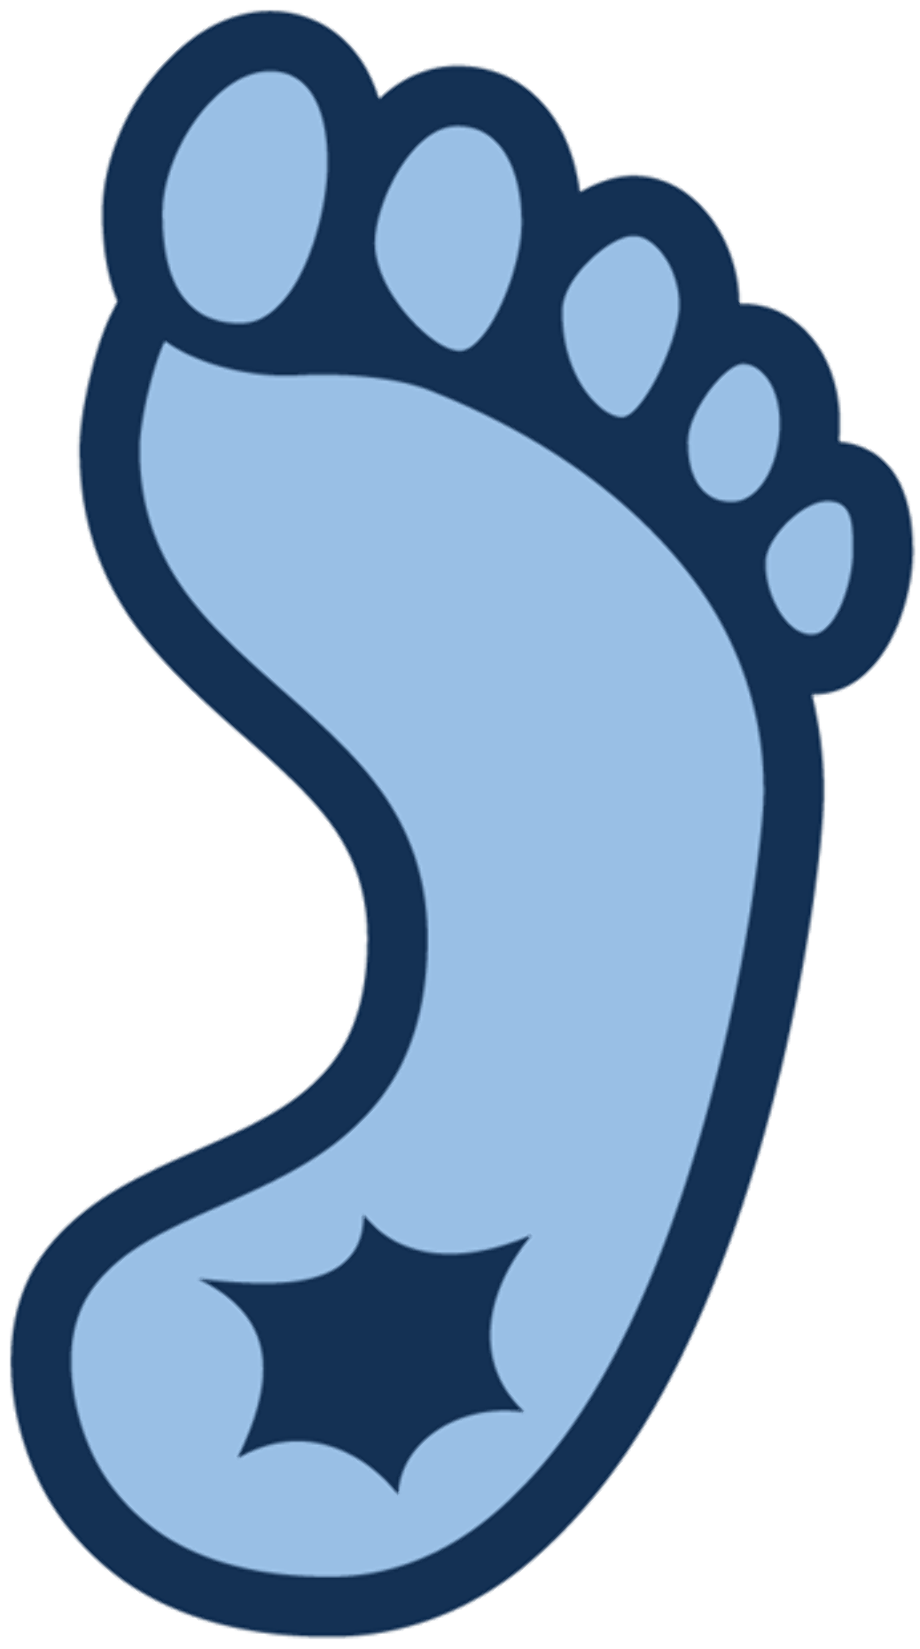 north carolina logo foot